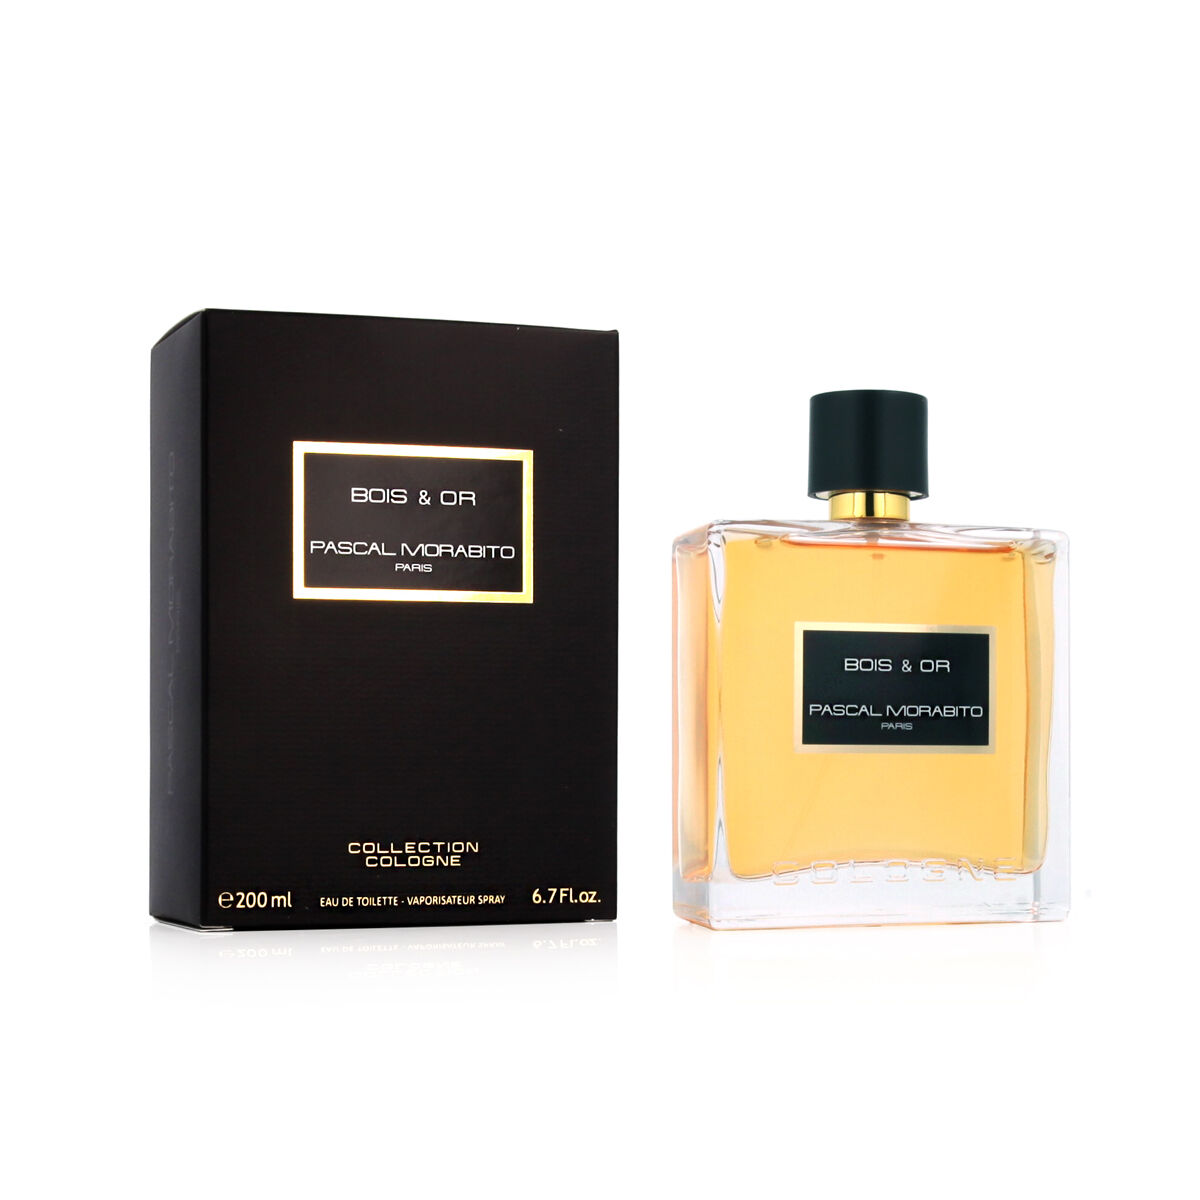 Men's Perfume Jean Louis Scherrer 023627-S11 100 ml EDT